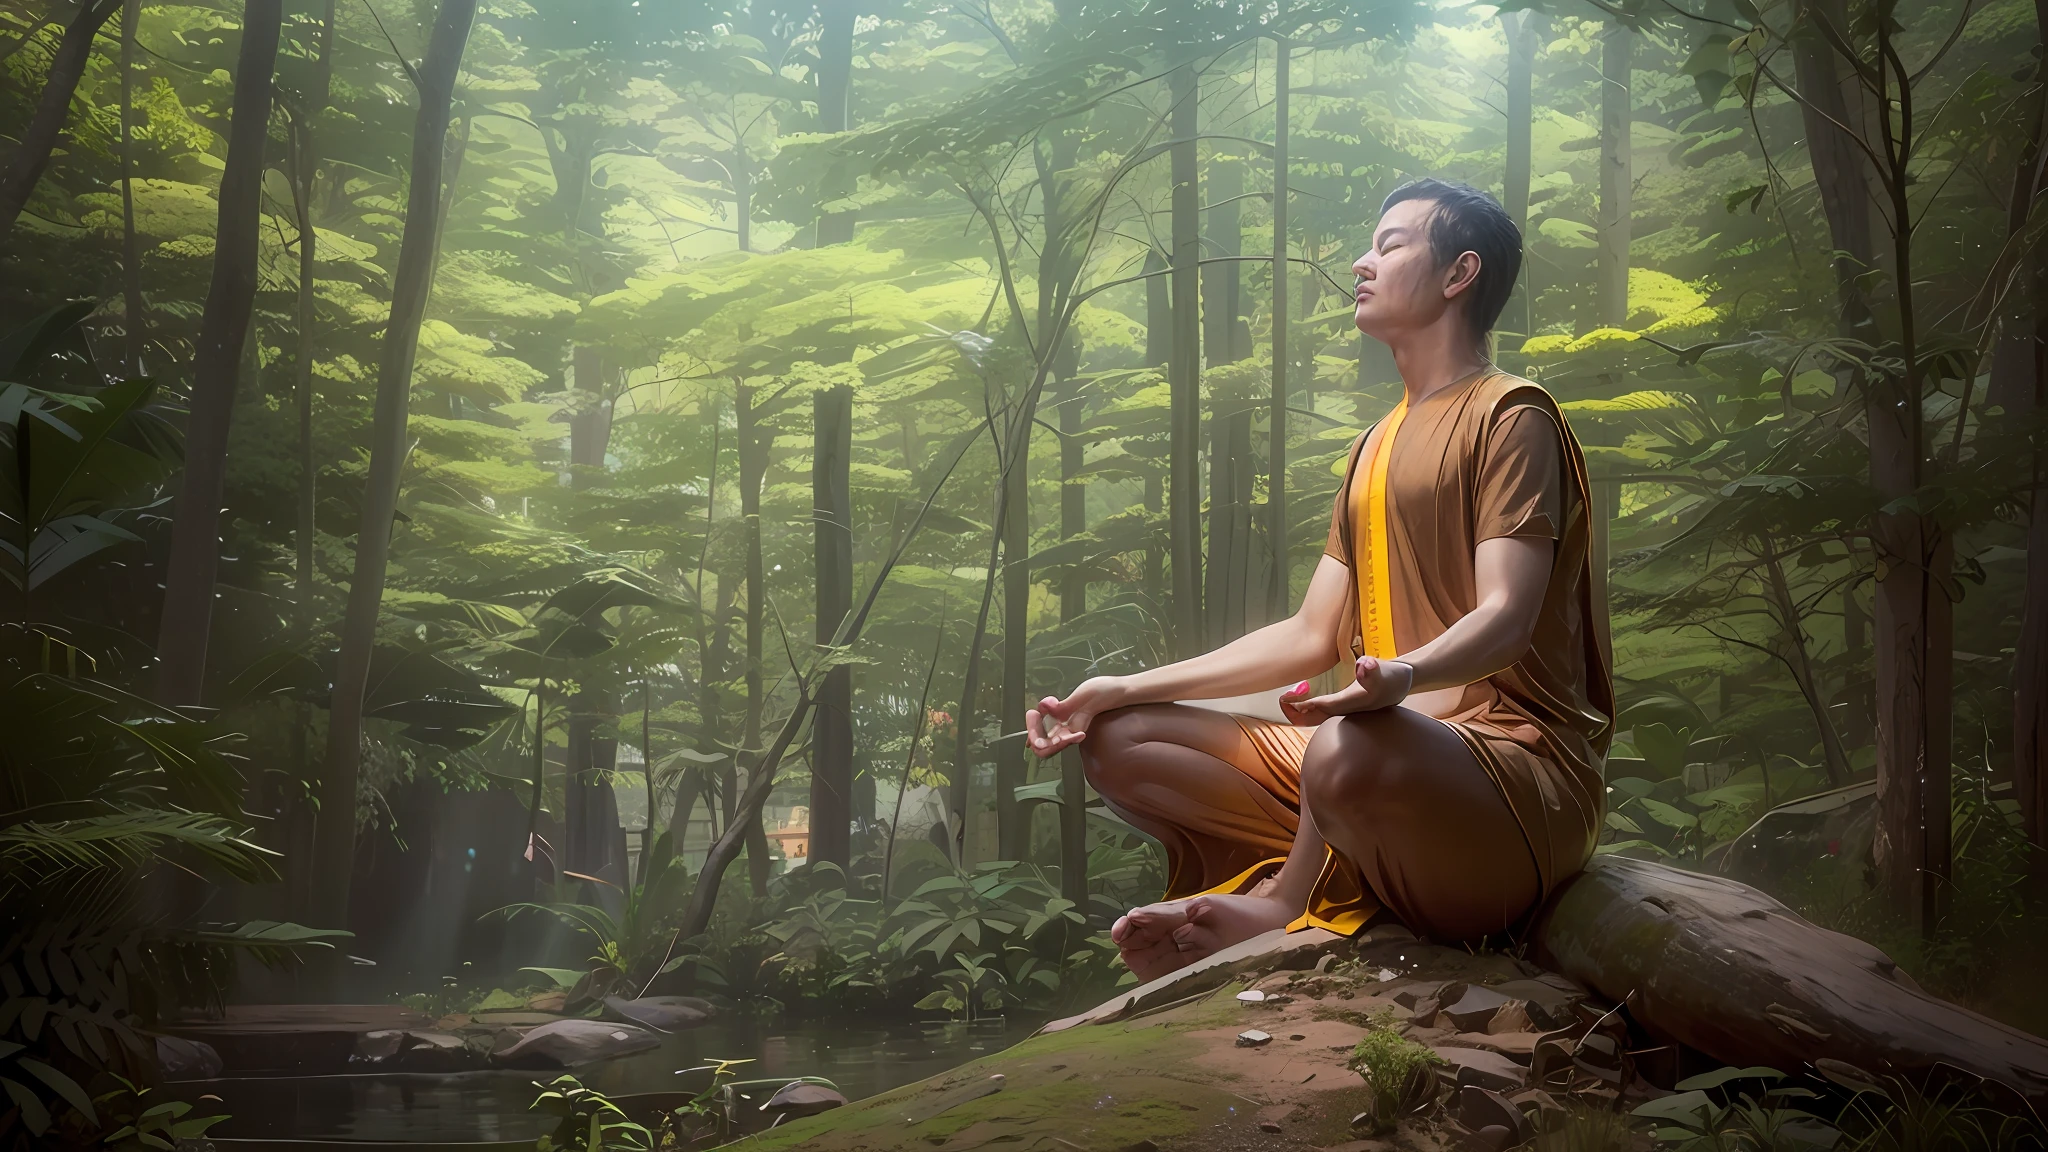 有一个人坐在森林里的一块岩石上, 冥想 pose, 冥想, 莲花坐禅, 冥想姿势, 坐在福雷斯特上, 冥想, 冥想, 祈祷冥想, 禅修, yoga 冥想 pose, 沉思的, hindu stages of 冥想, 冥想骶骨姿势, 舒卡萨纳, 人物冥想近景, 肖像照片